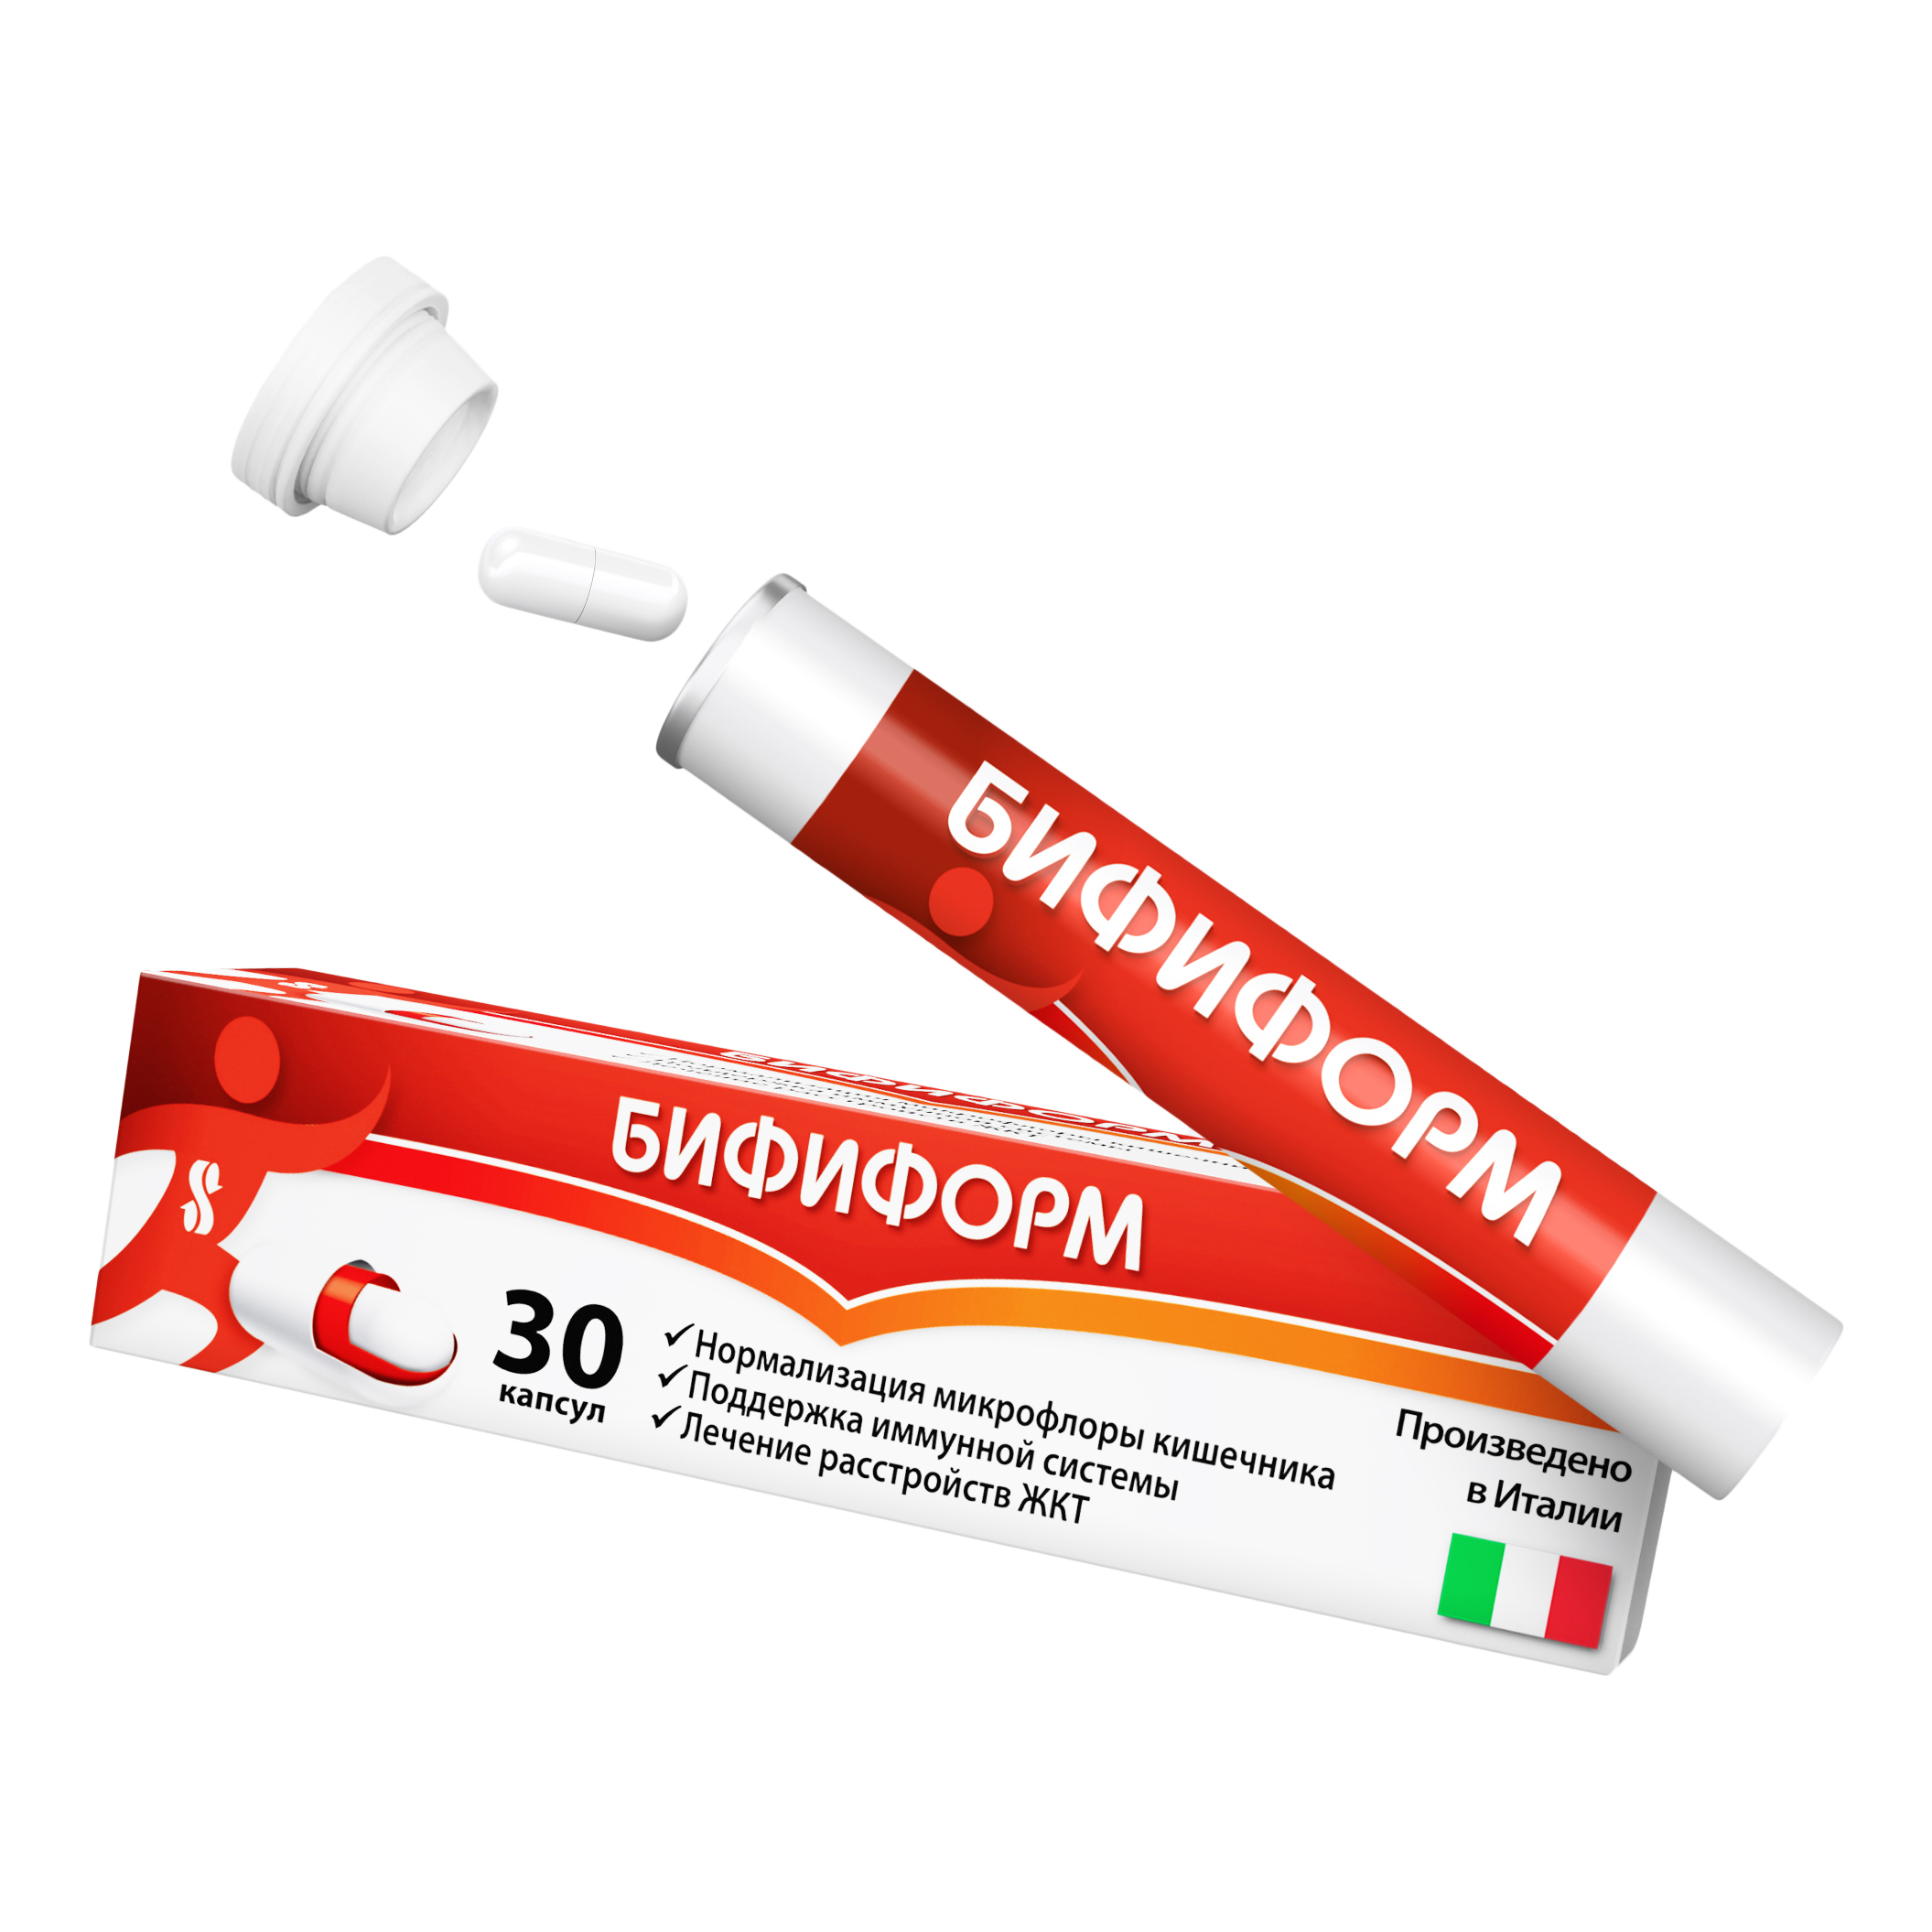 Бифиформ пробиотик для нормализации микрофлоры кишечника и поддержания иммунитета, 30 шт.